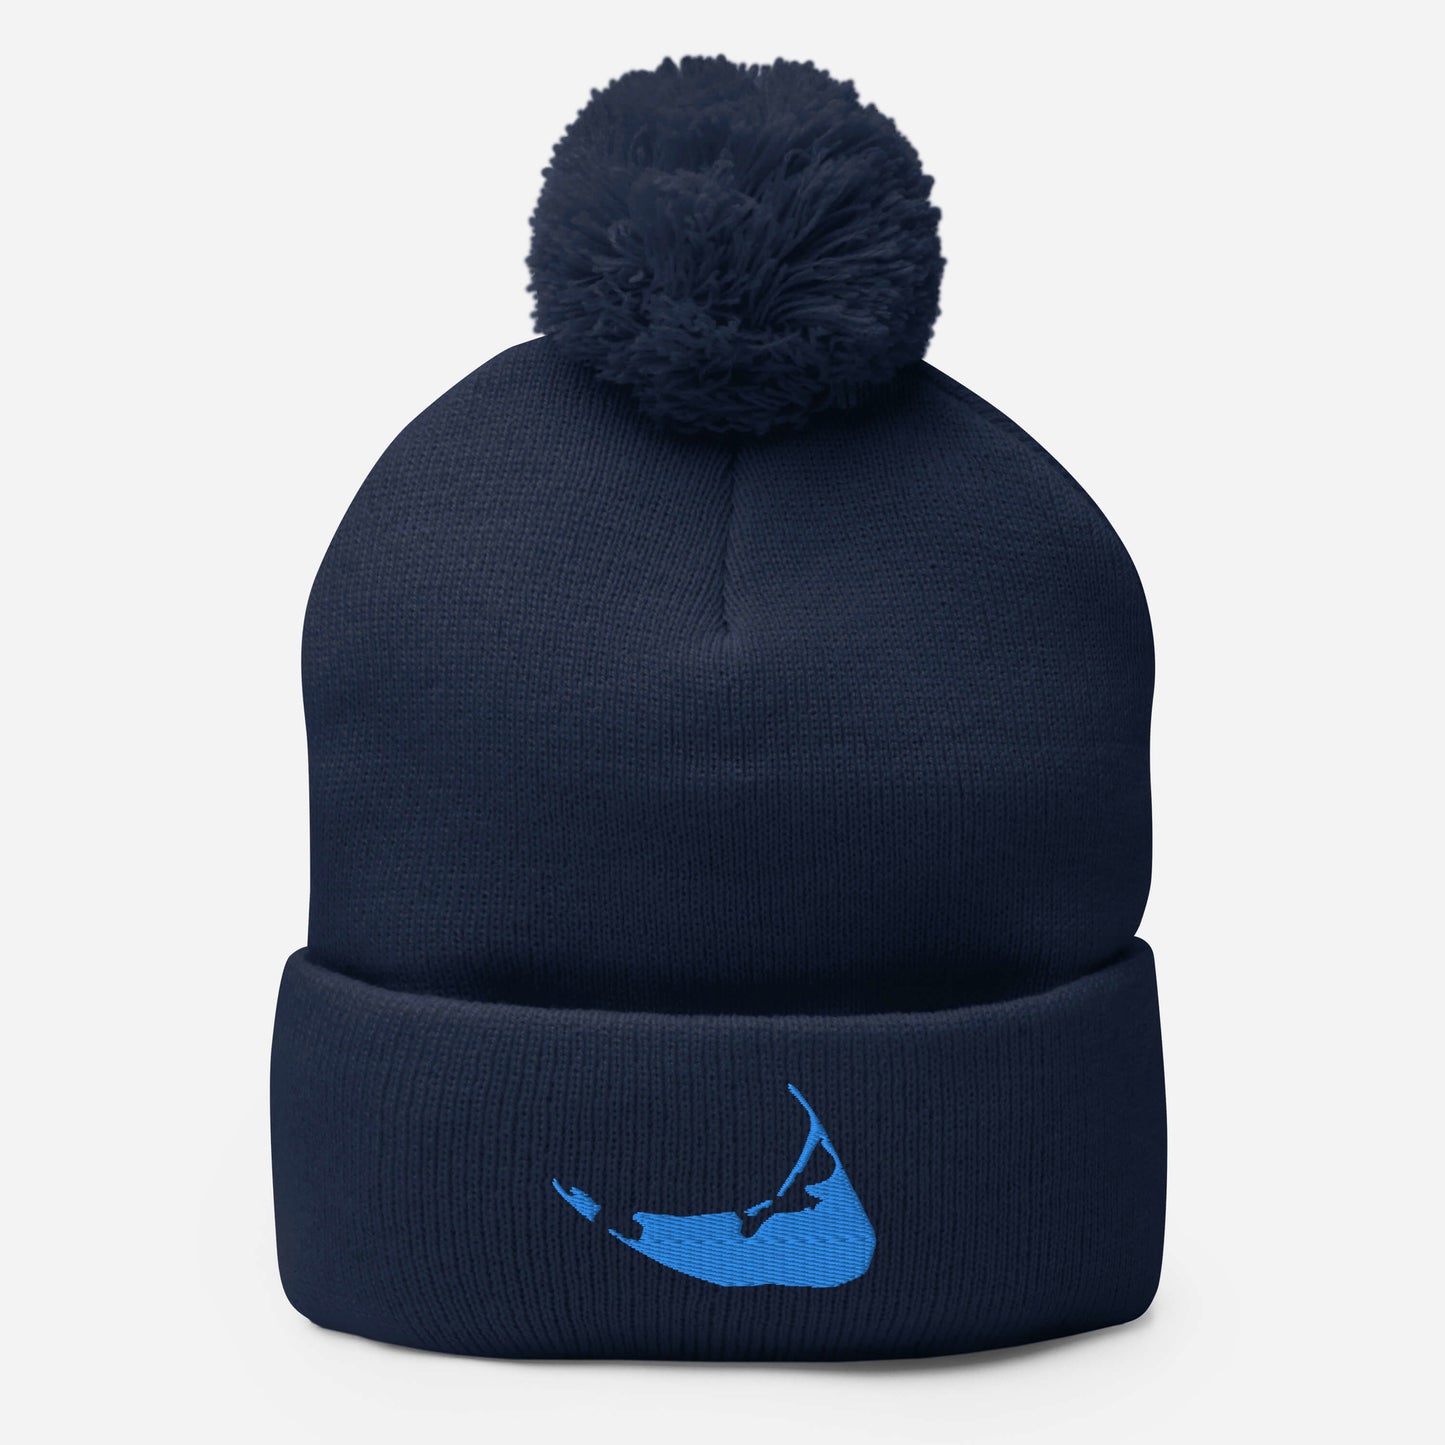 Nantucket Pom-Pom Hat - Blue on Navy